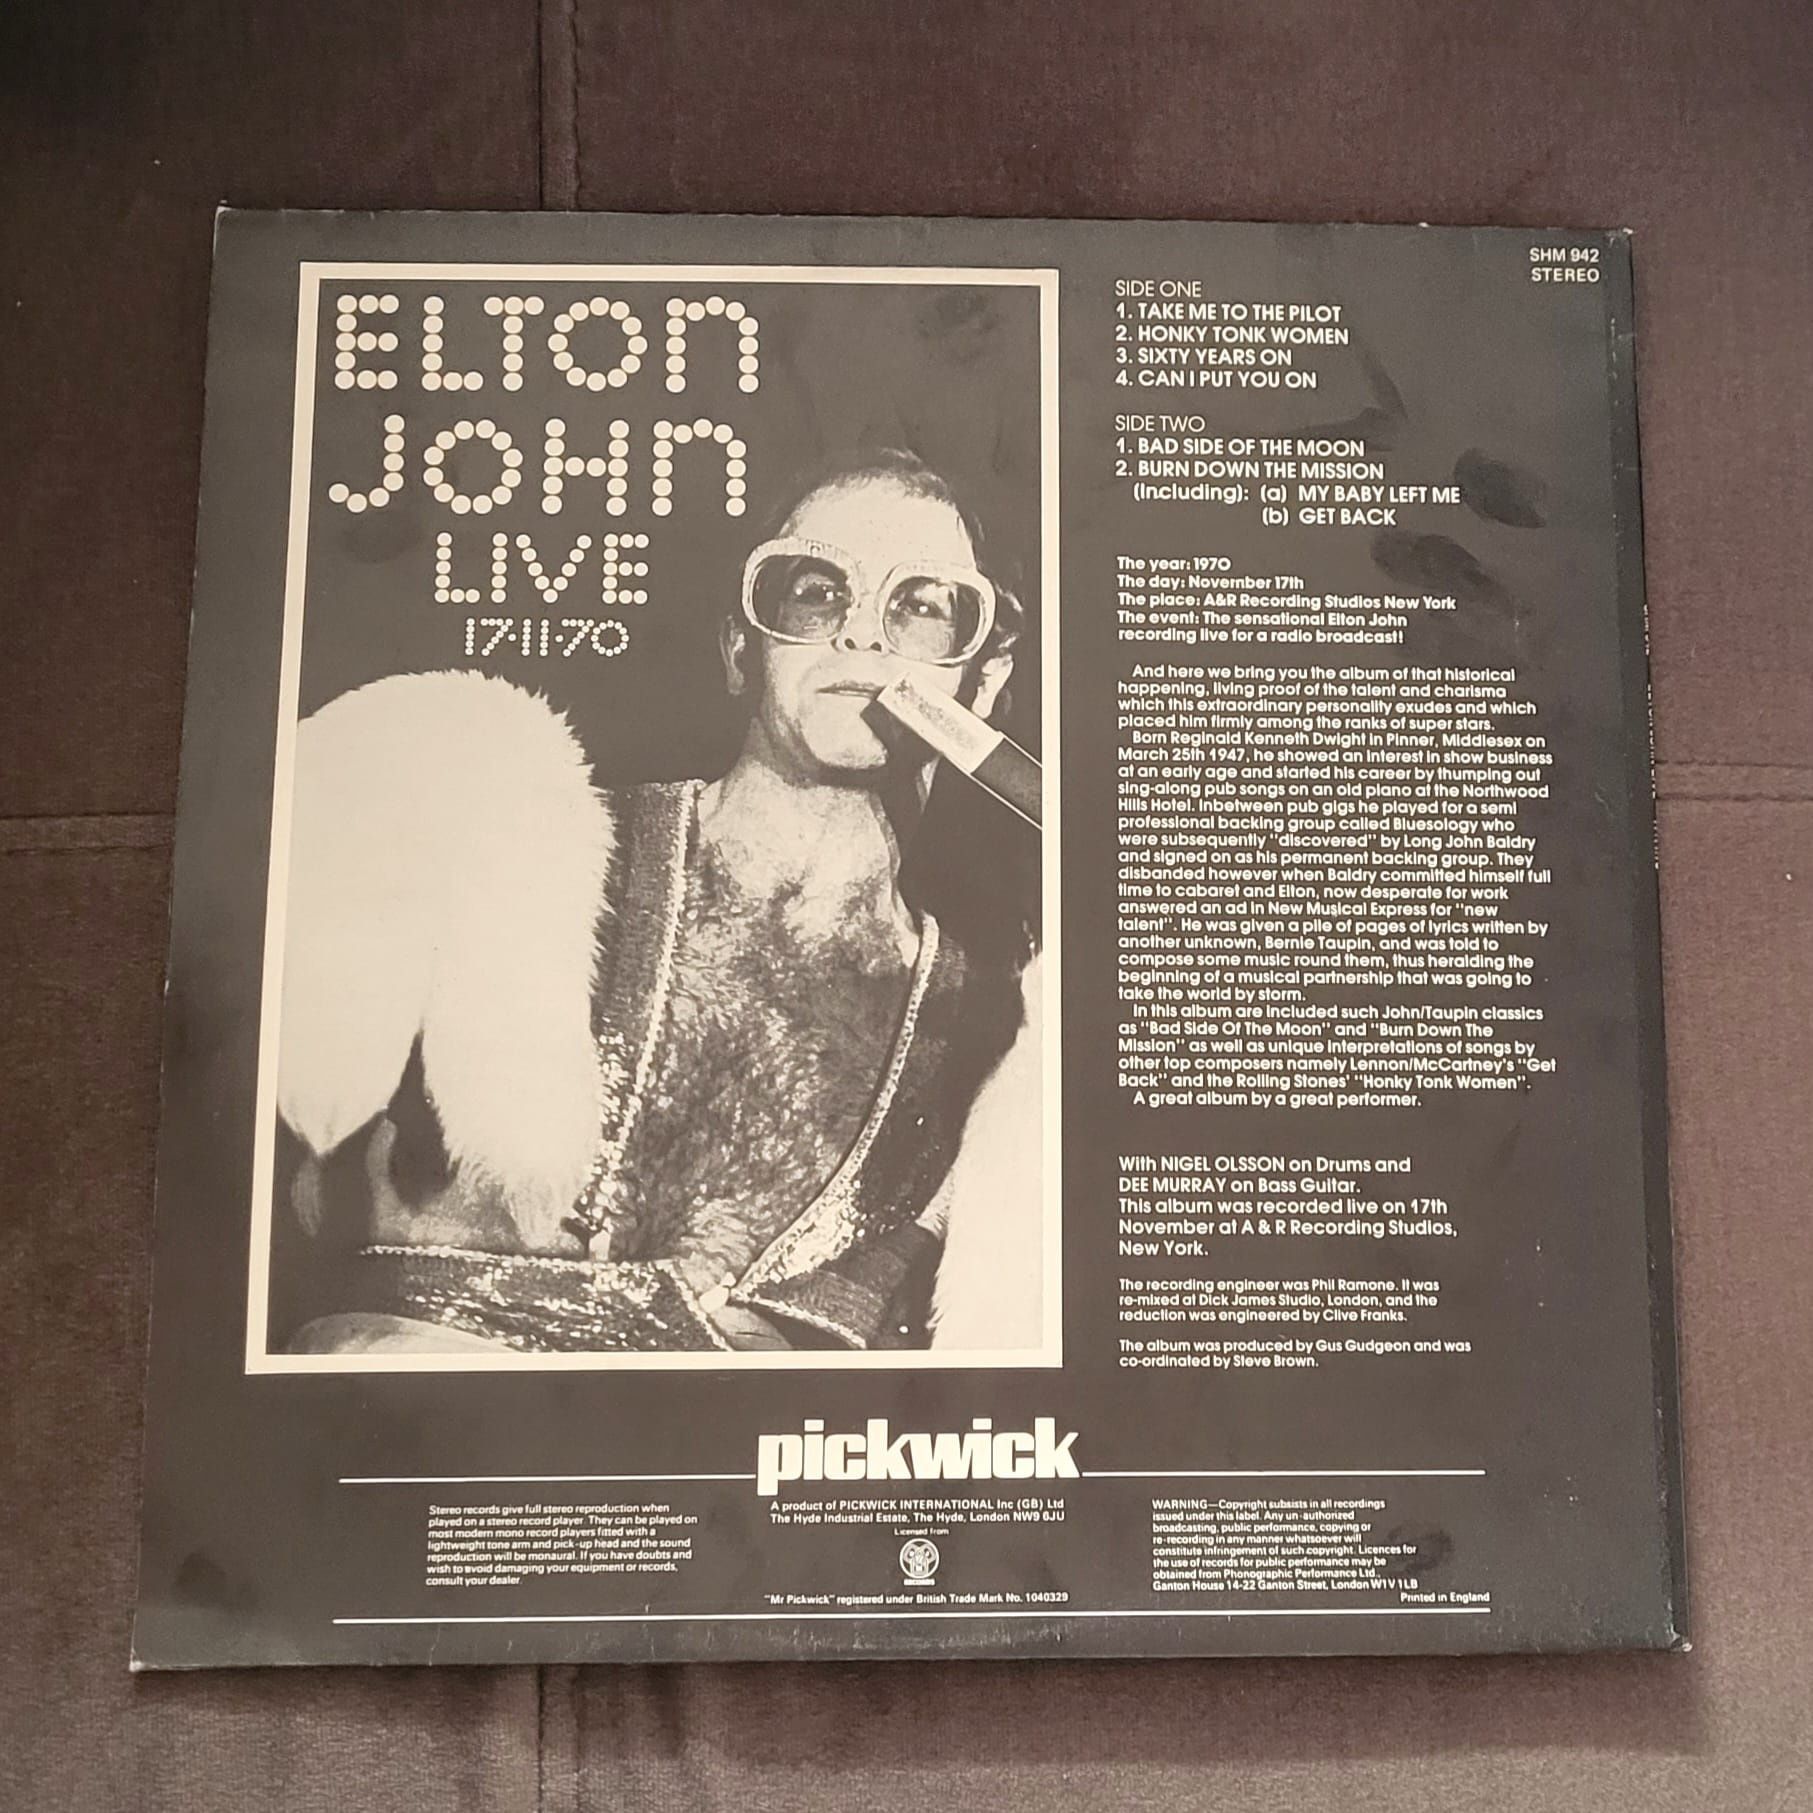 Wyjątkowy Winyl: Elton John Live 17.11.70 - Doskonały Stan!